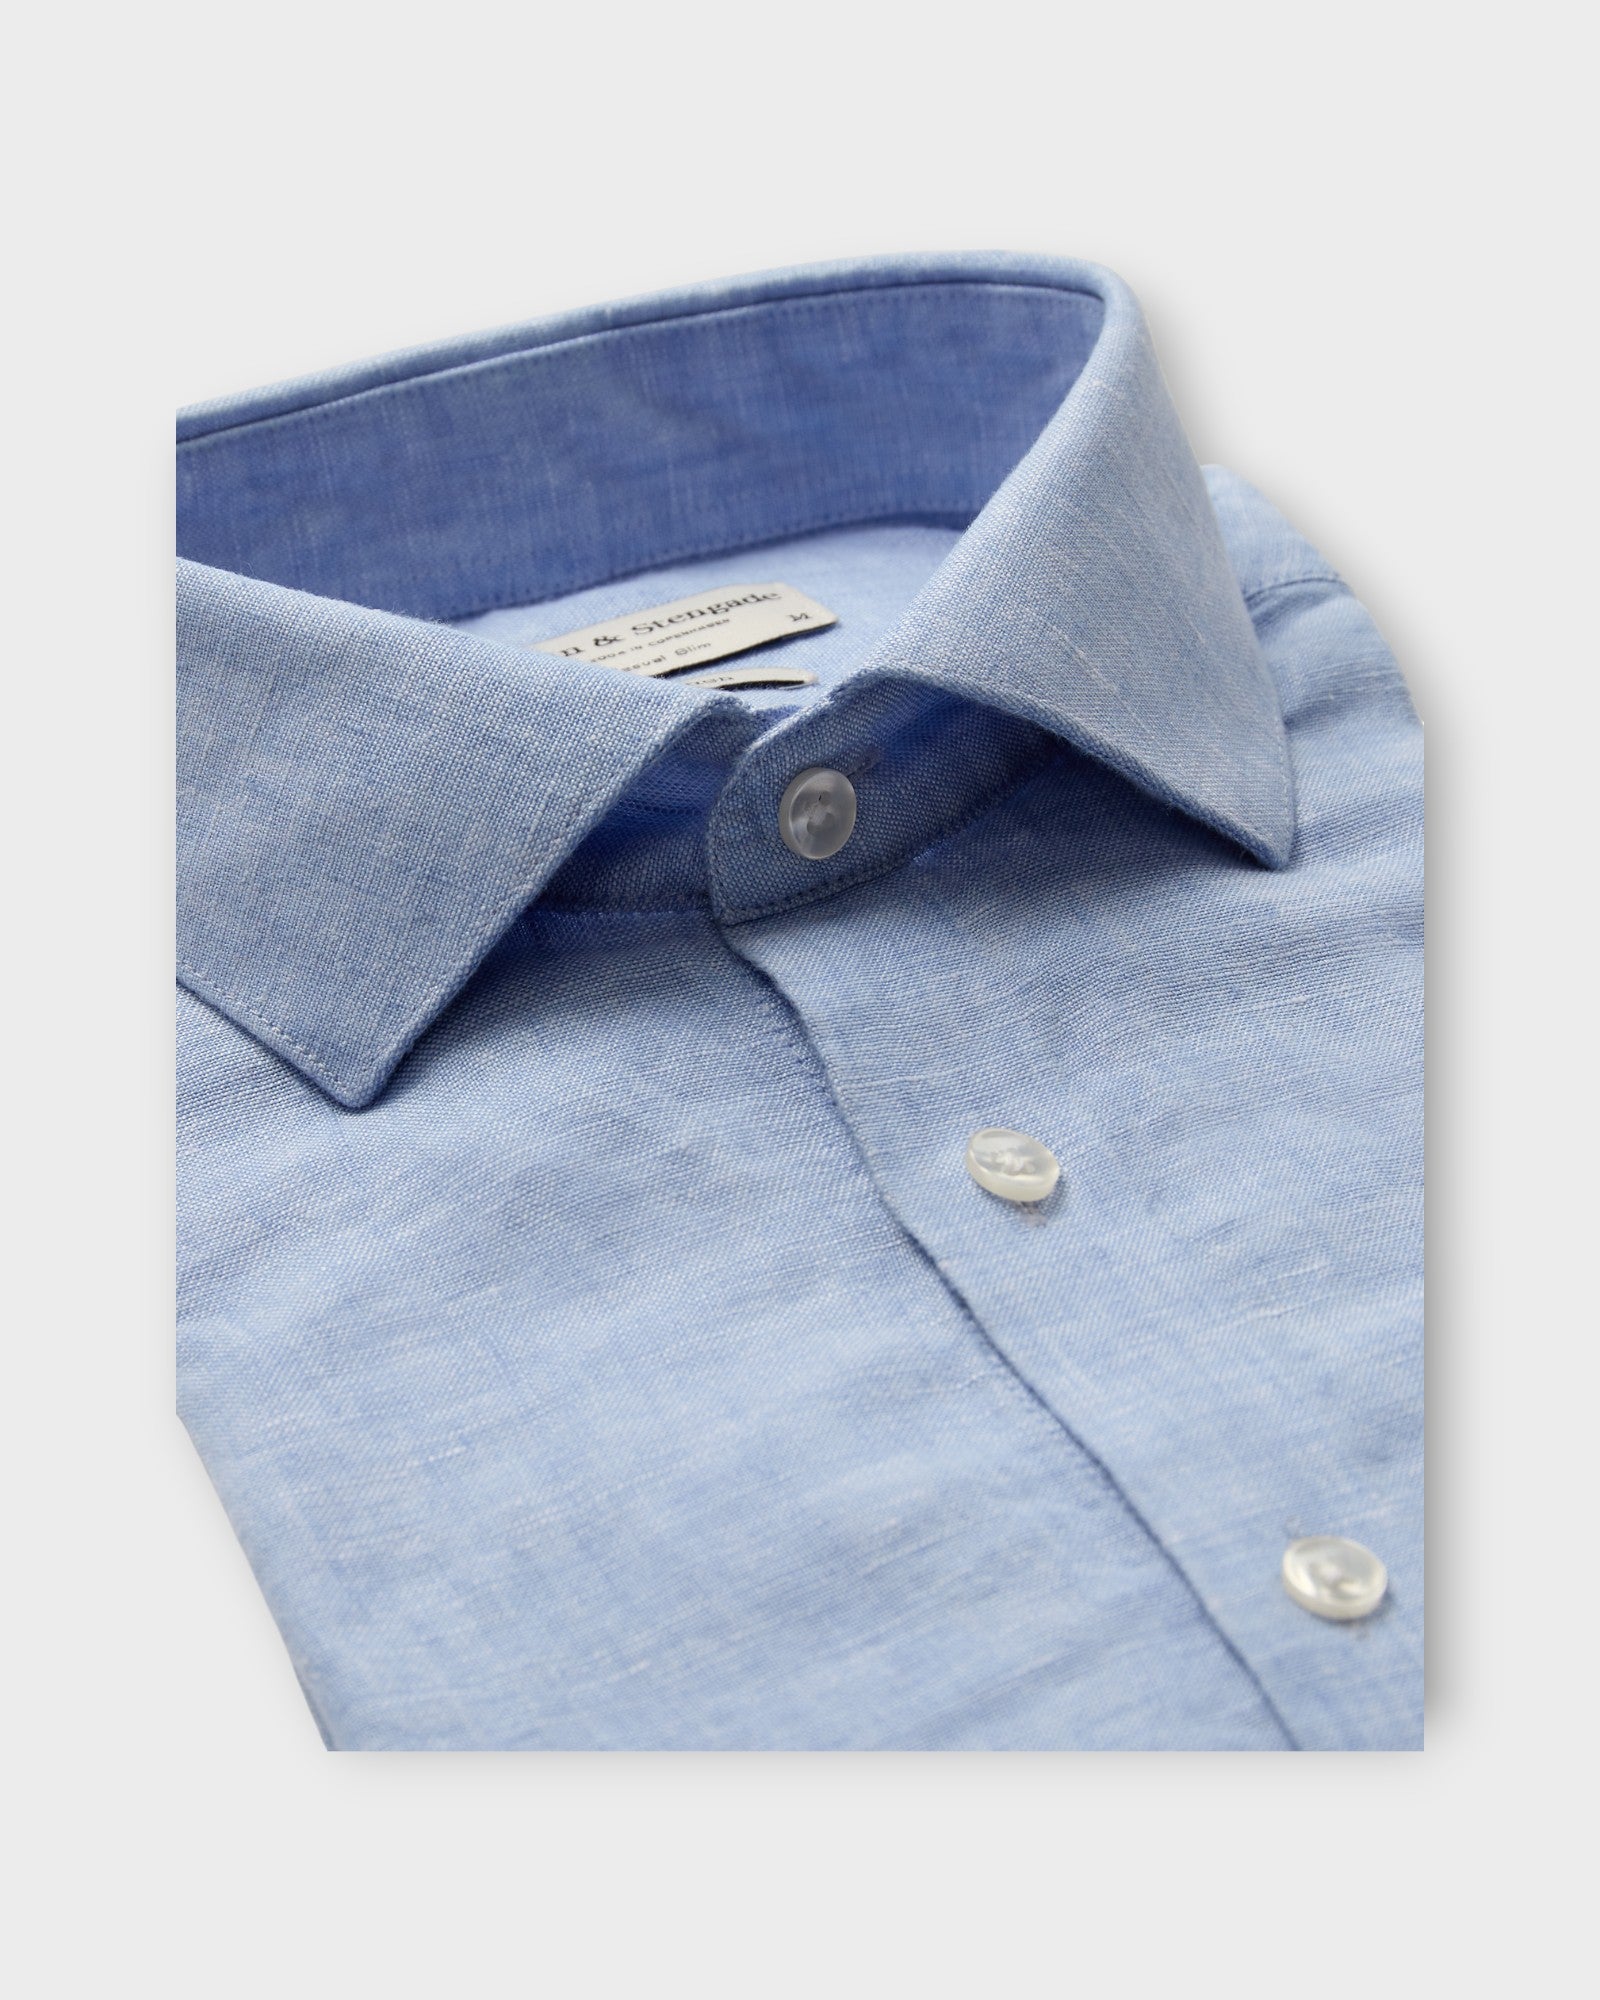 Perth Casual Slim Fit Shirt Light Blue, lyseblå hørskjorte fra Bruun og Stengade. Her set i  closeup.